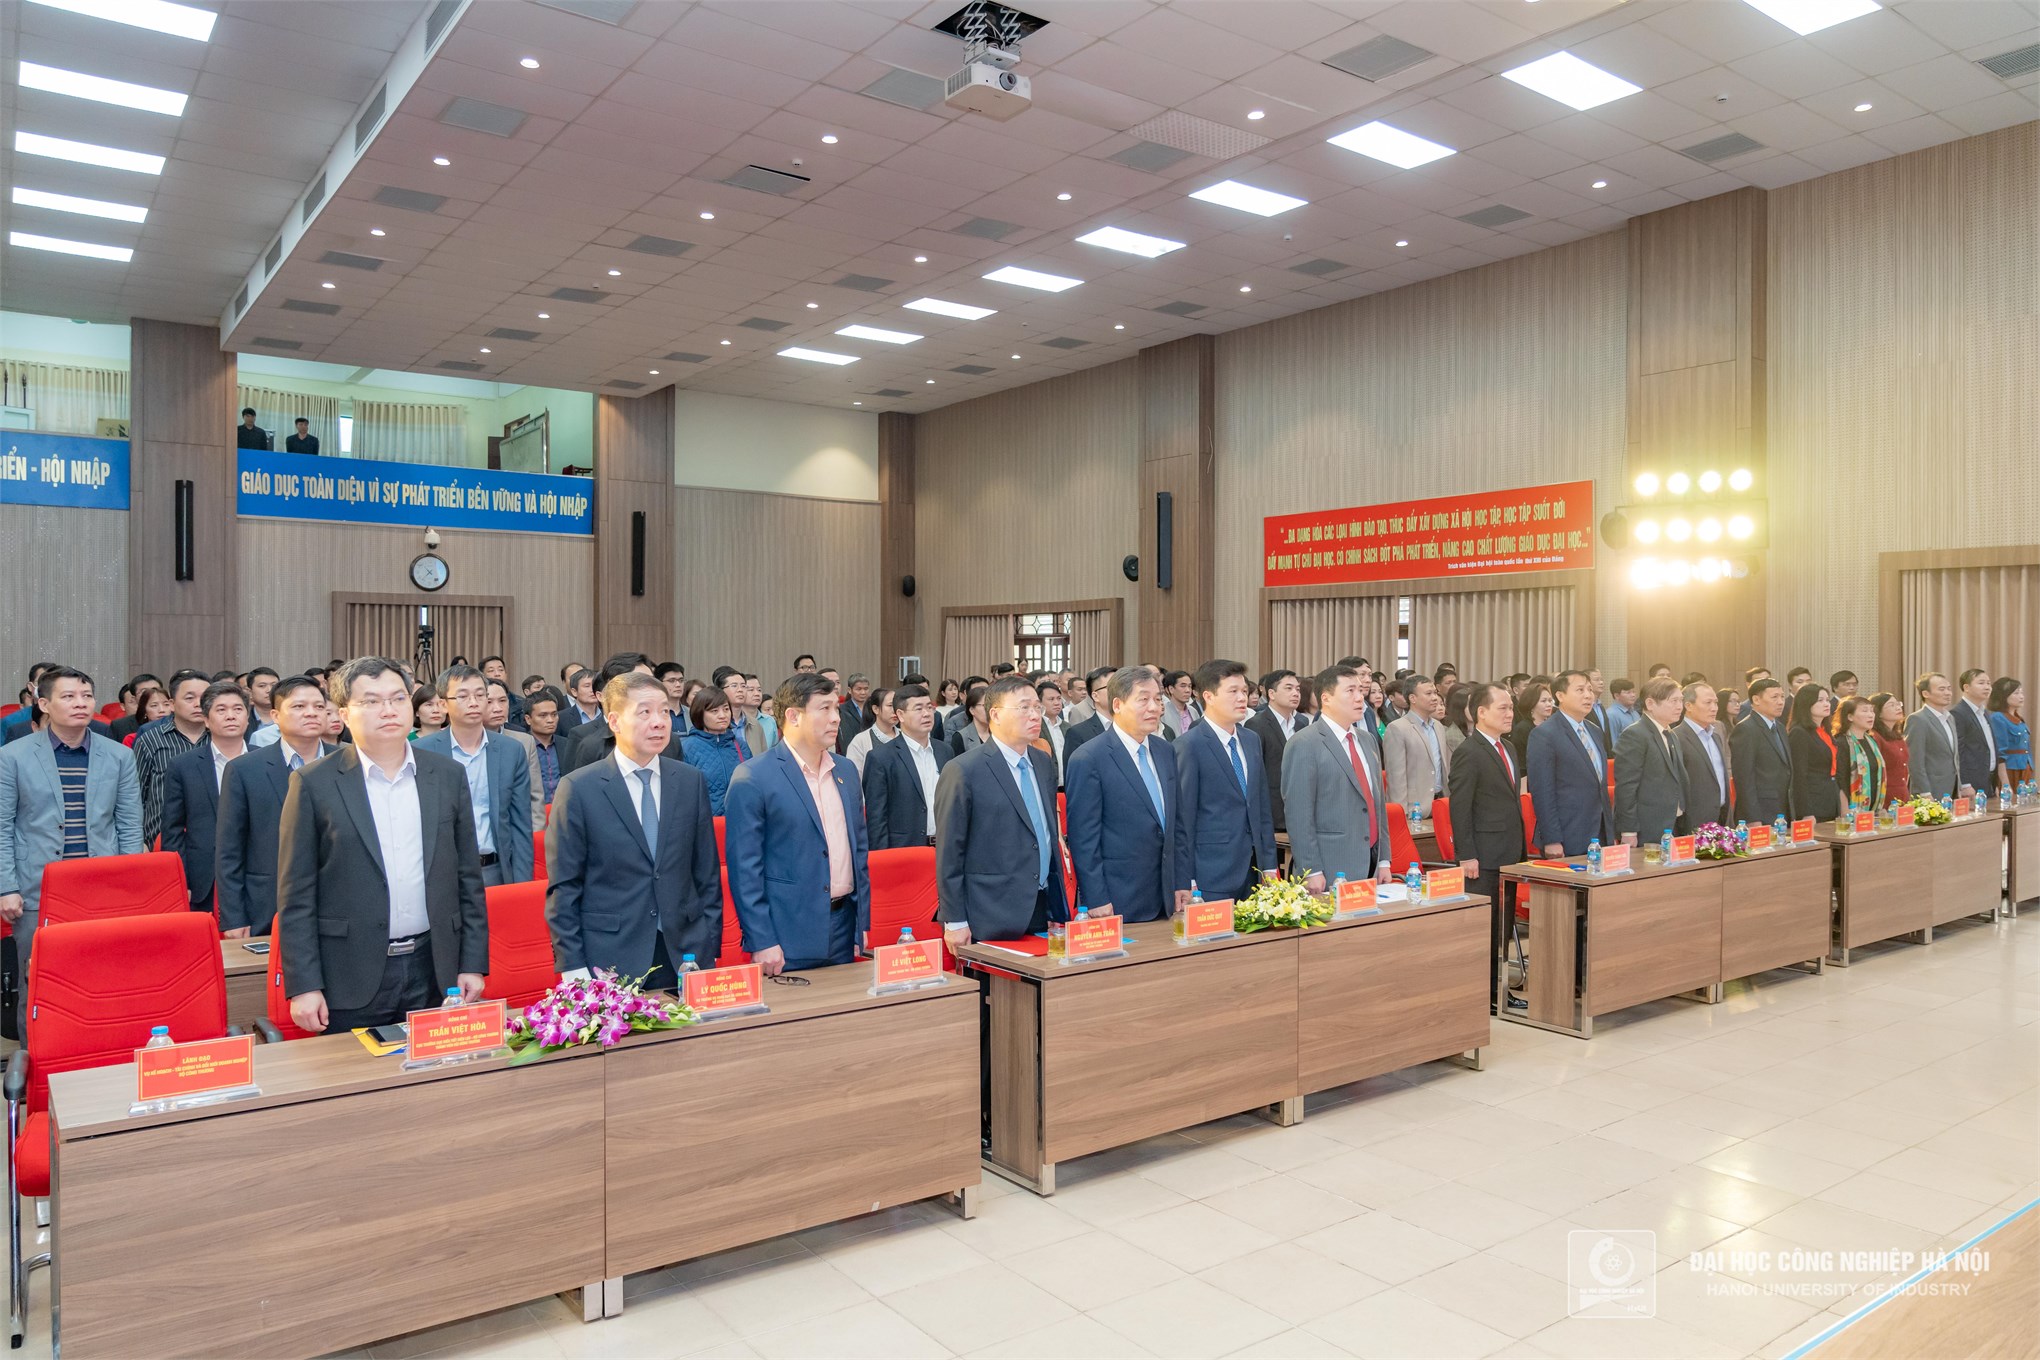 Lễ công bố Quyết định công nhận Hiệu trưởng Trường Đại học Công nghiệp Hà Nội